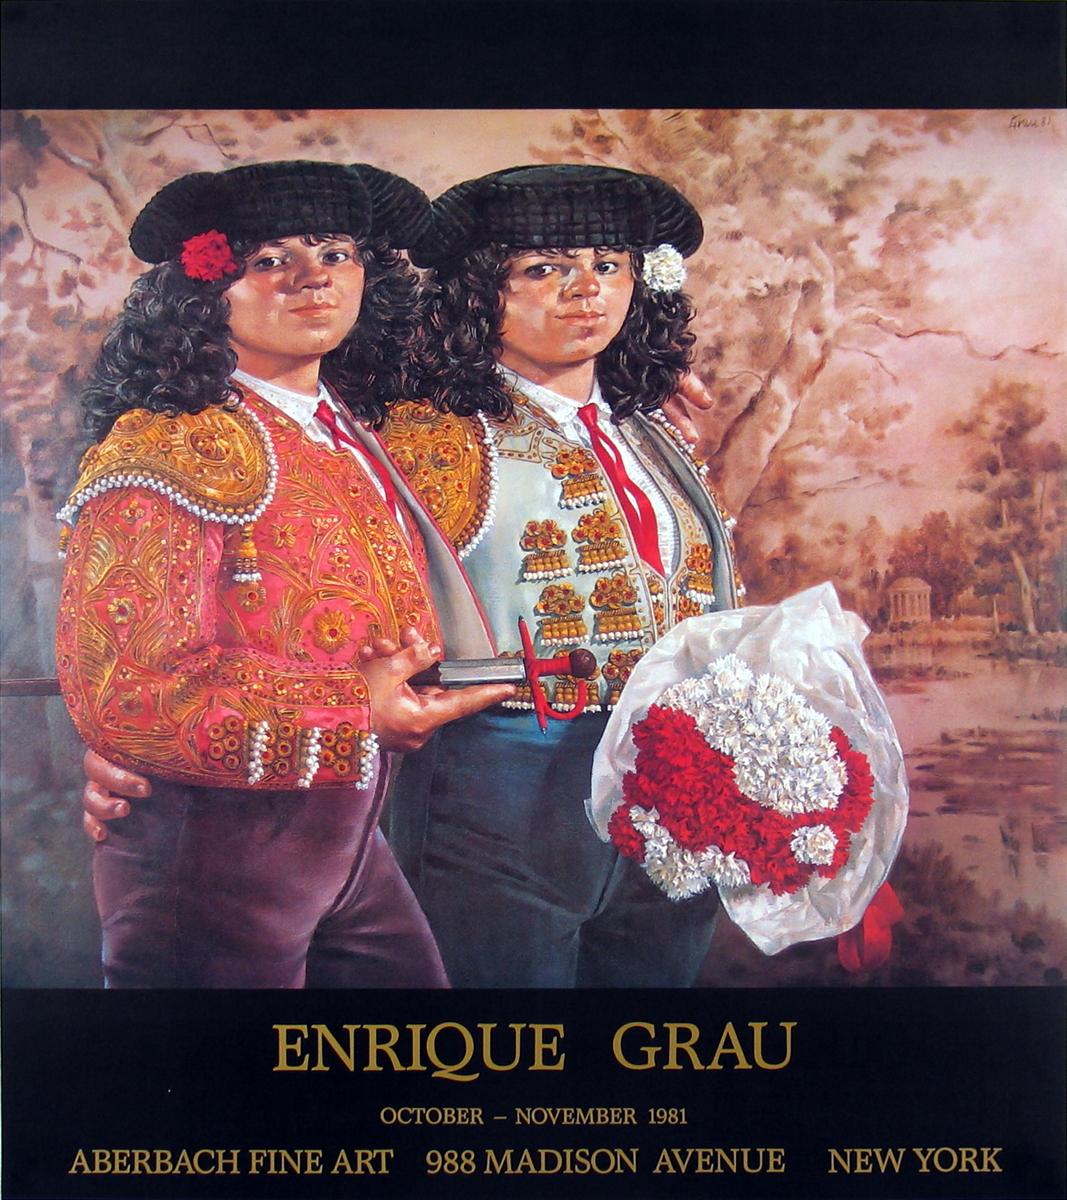 After Enrique Grau-Las Toreras